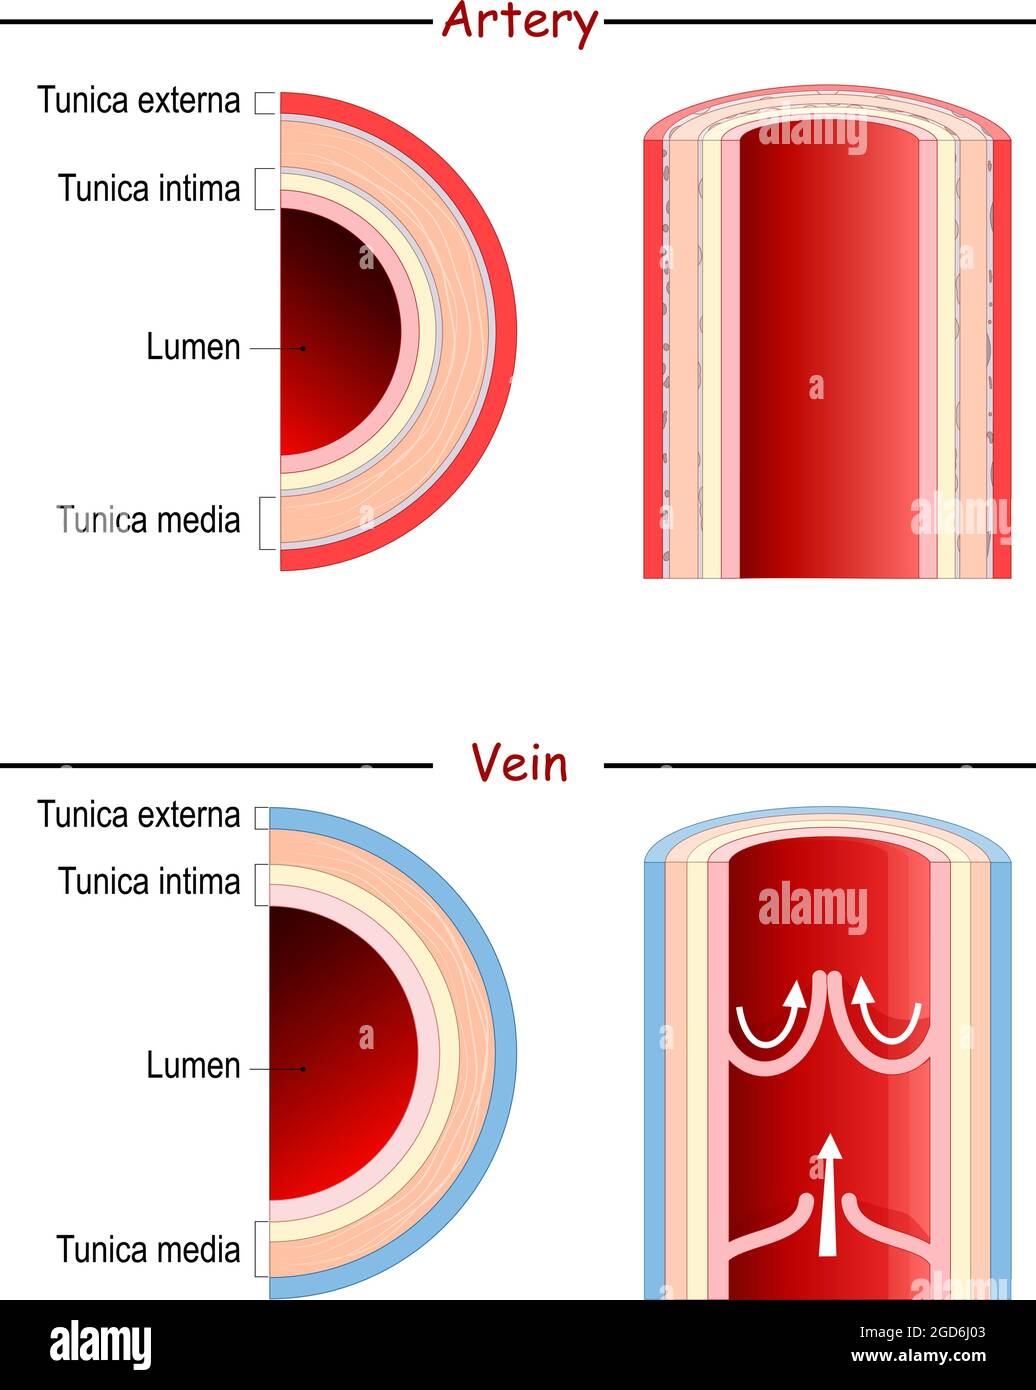 Anatomie de la veine et de l'artère. Comparaison et différence. Vaisseau sanguin humain longitudinal et transversal. Affiche à usage médical et éducatif. Vecteur Illustration de Vecteur